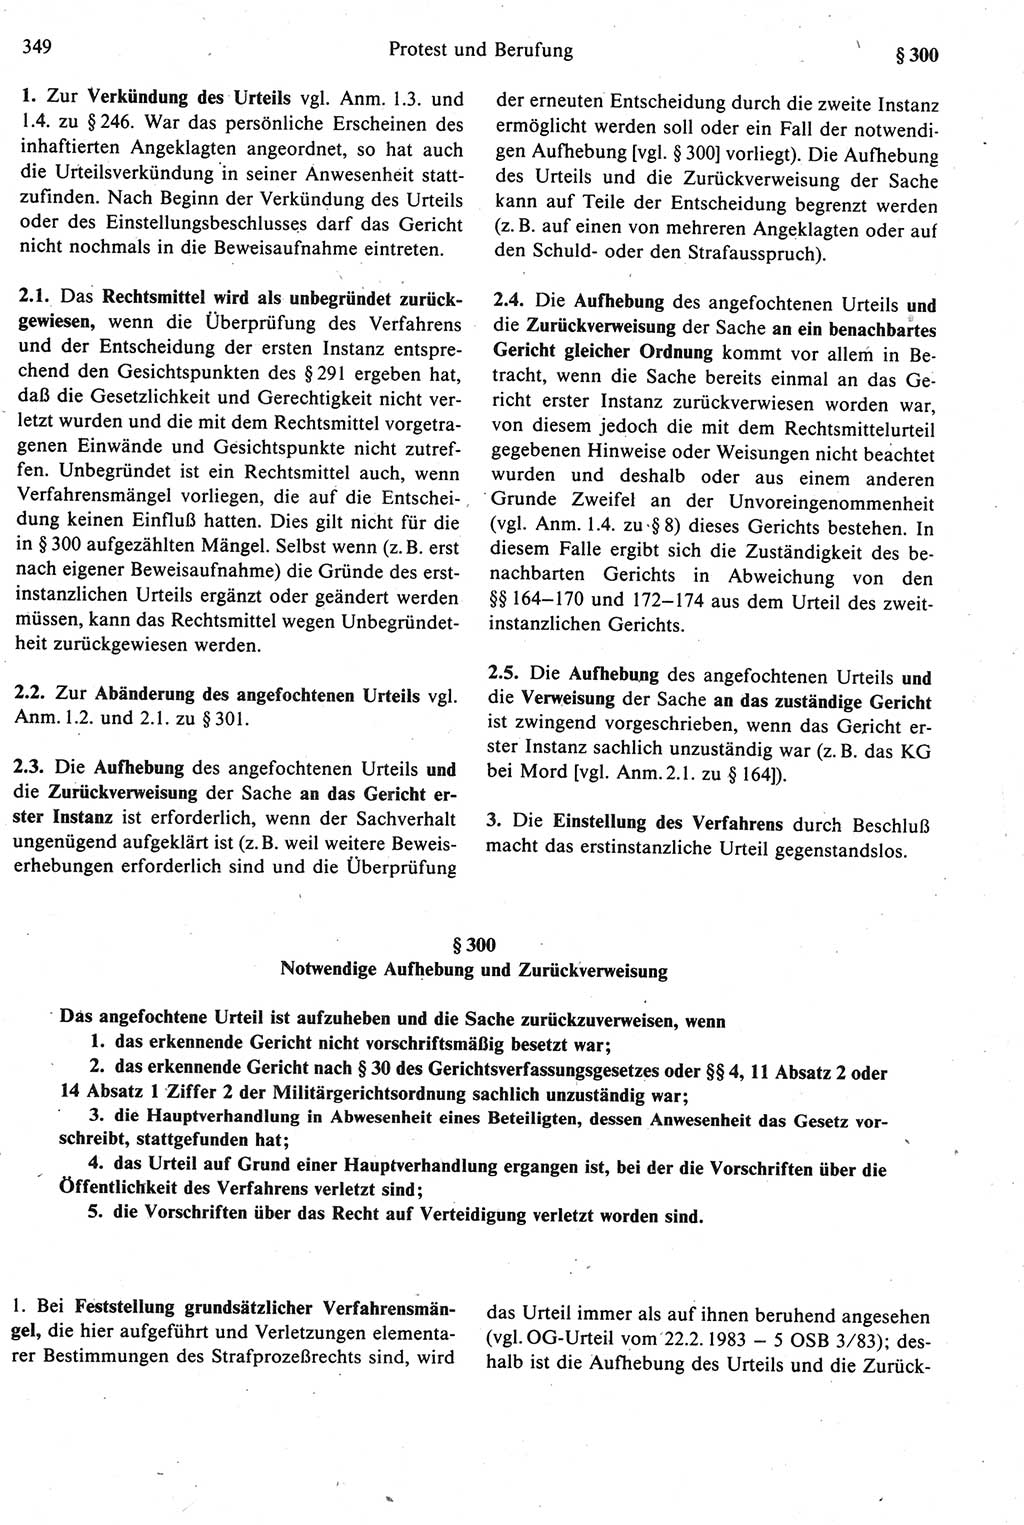 Strafprozeßrecht der DDR [Deutsche Demokratische Republik], Kommentar zur Strafprozeßordnung (StPO) 1987, Seite 349 (Strafprozeßr. DDR Komm. StPO 1987, S. 349)